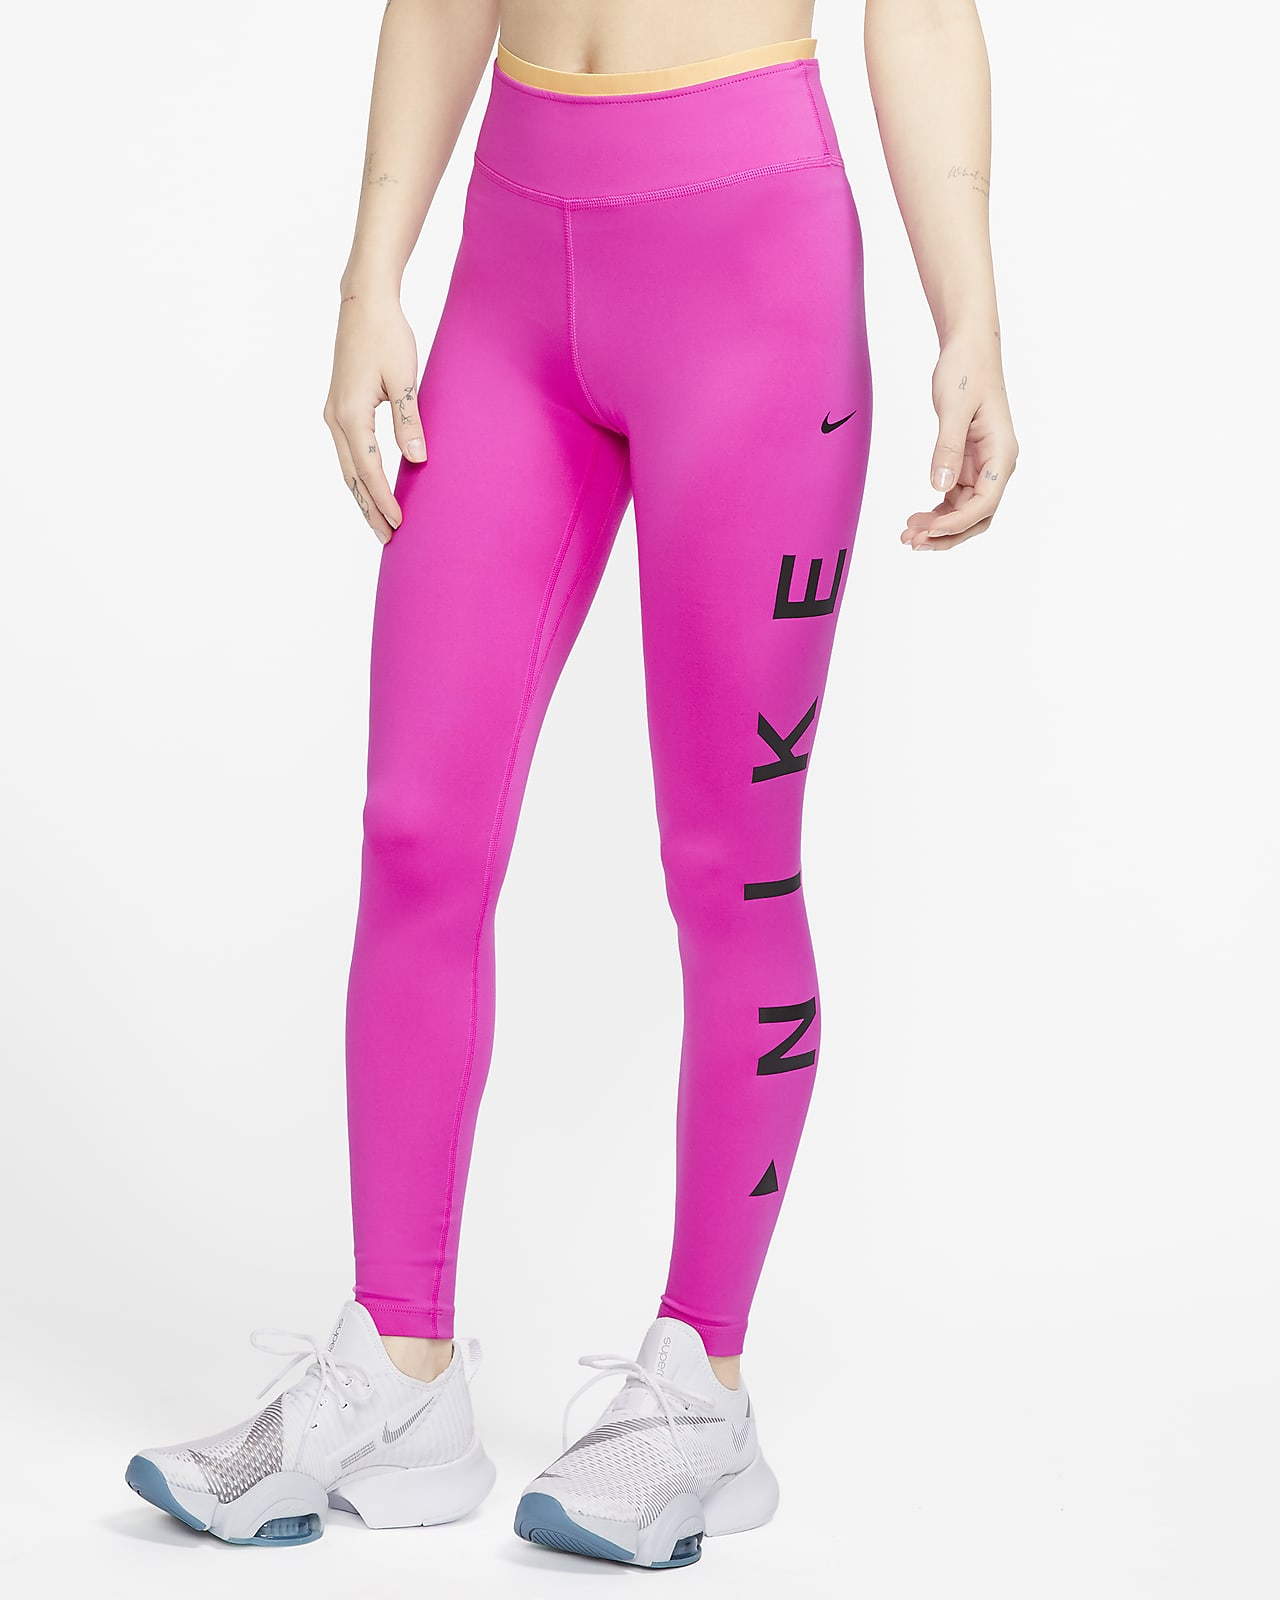 womens pink nike leggings